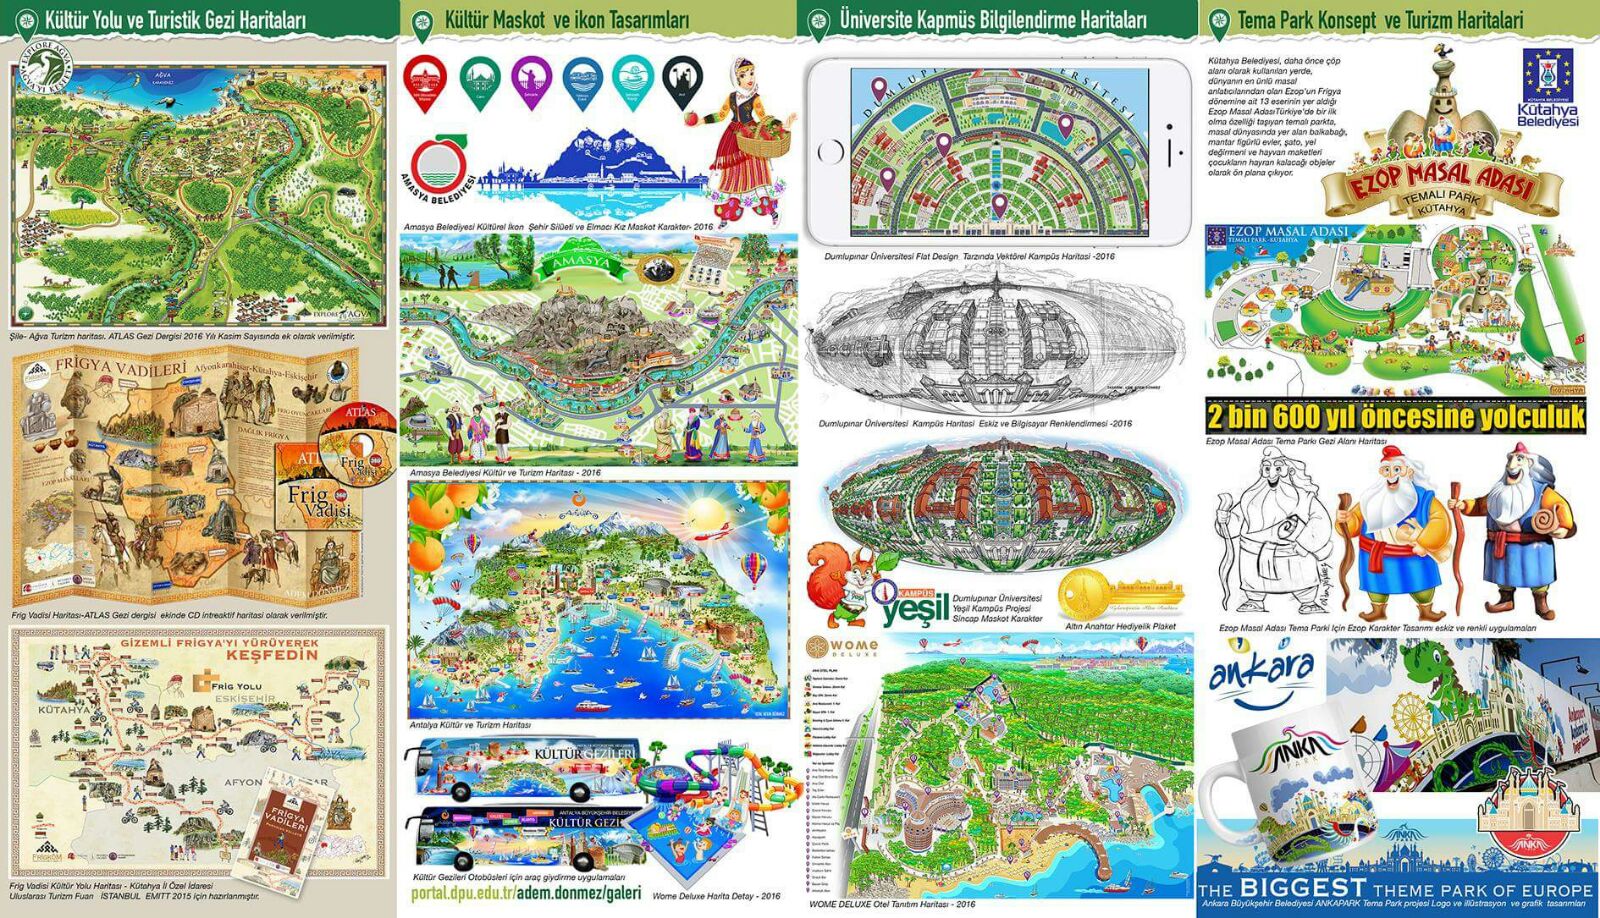 turistik gezi haritaları - kültür ve turizm haritaları / illustrasyon harita ve karikatür haritalar

(c) Adem DÖNMEZ 

 